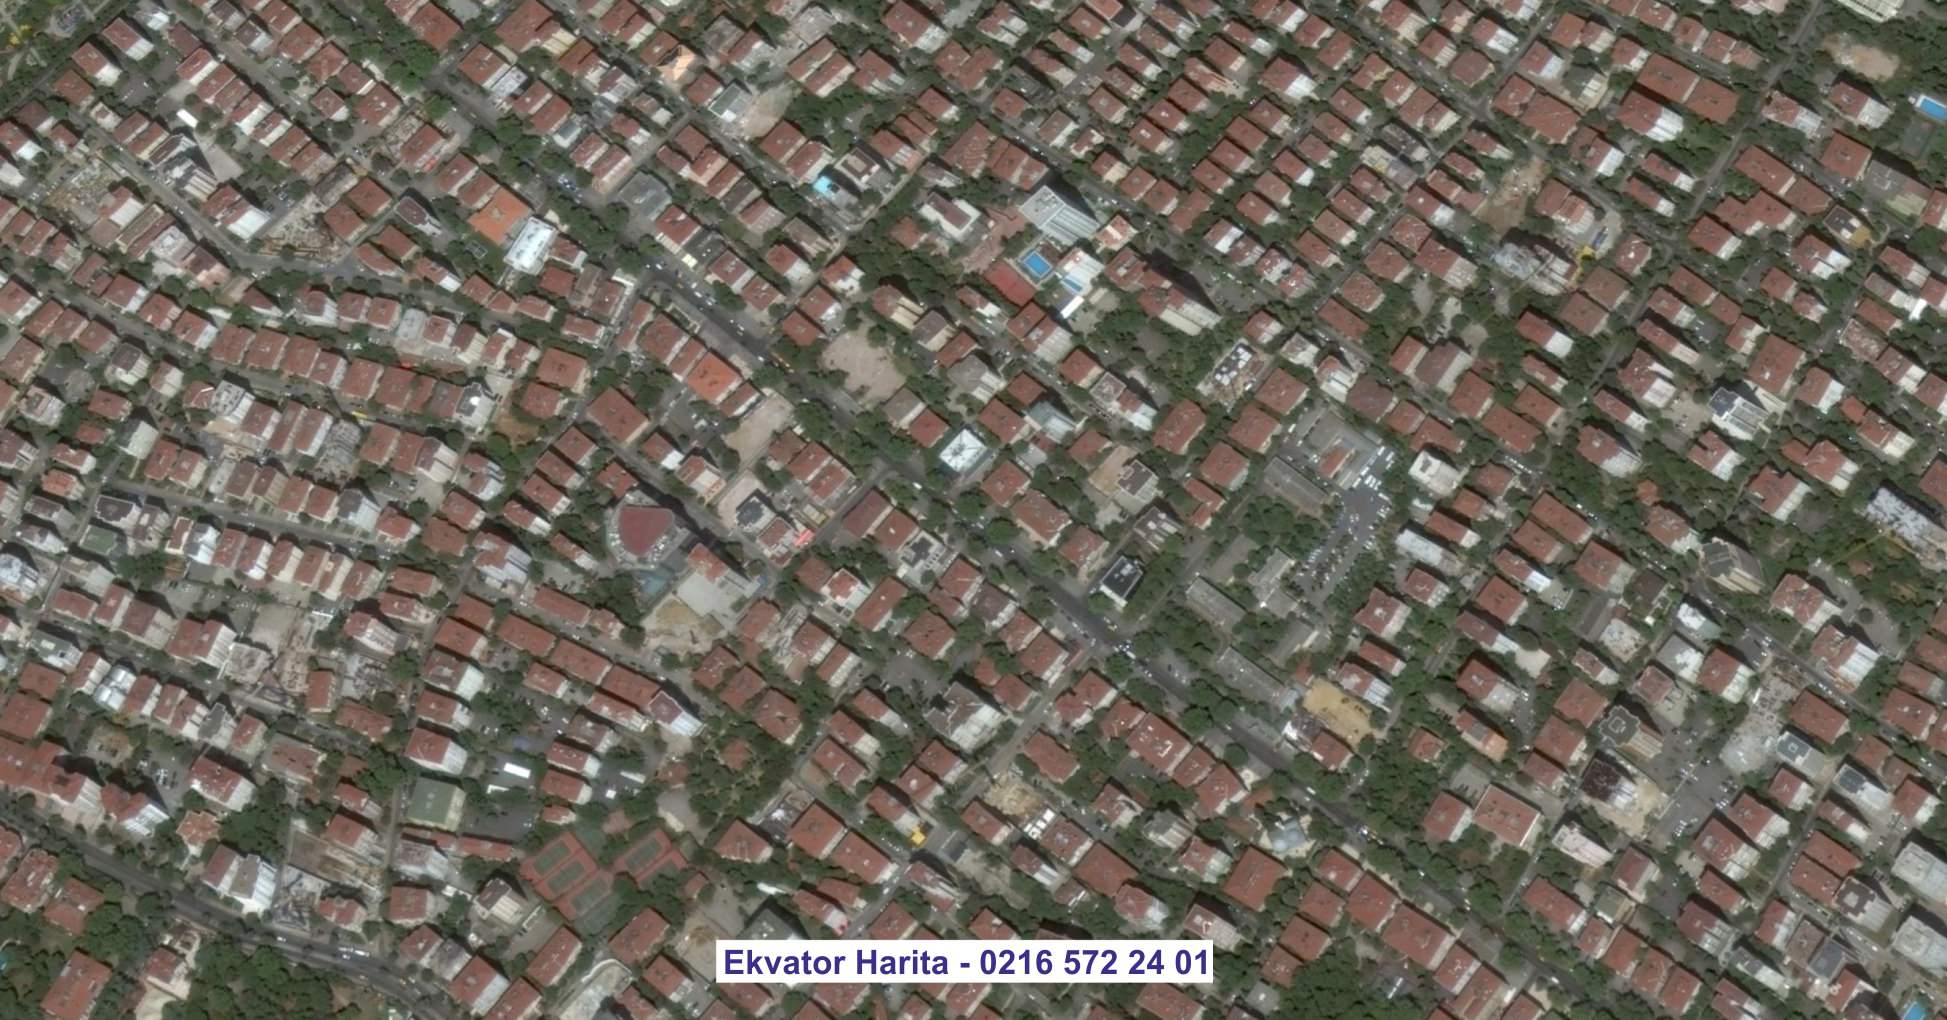 Mamak Uydu Görüntüsü Örnek Fotoğrafı